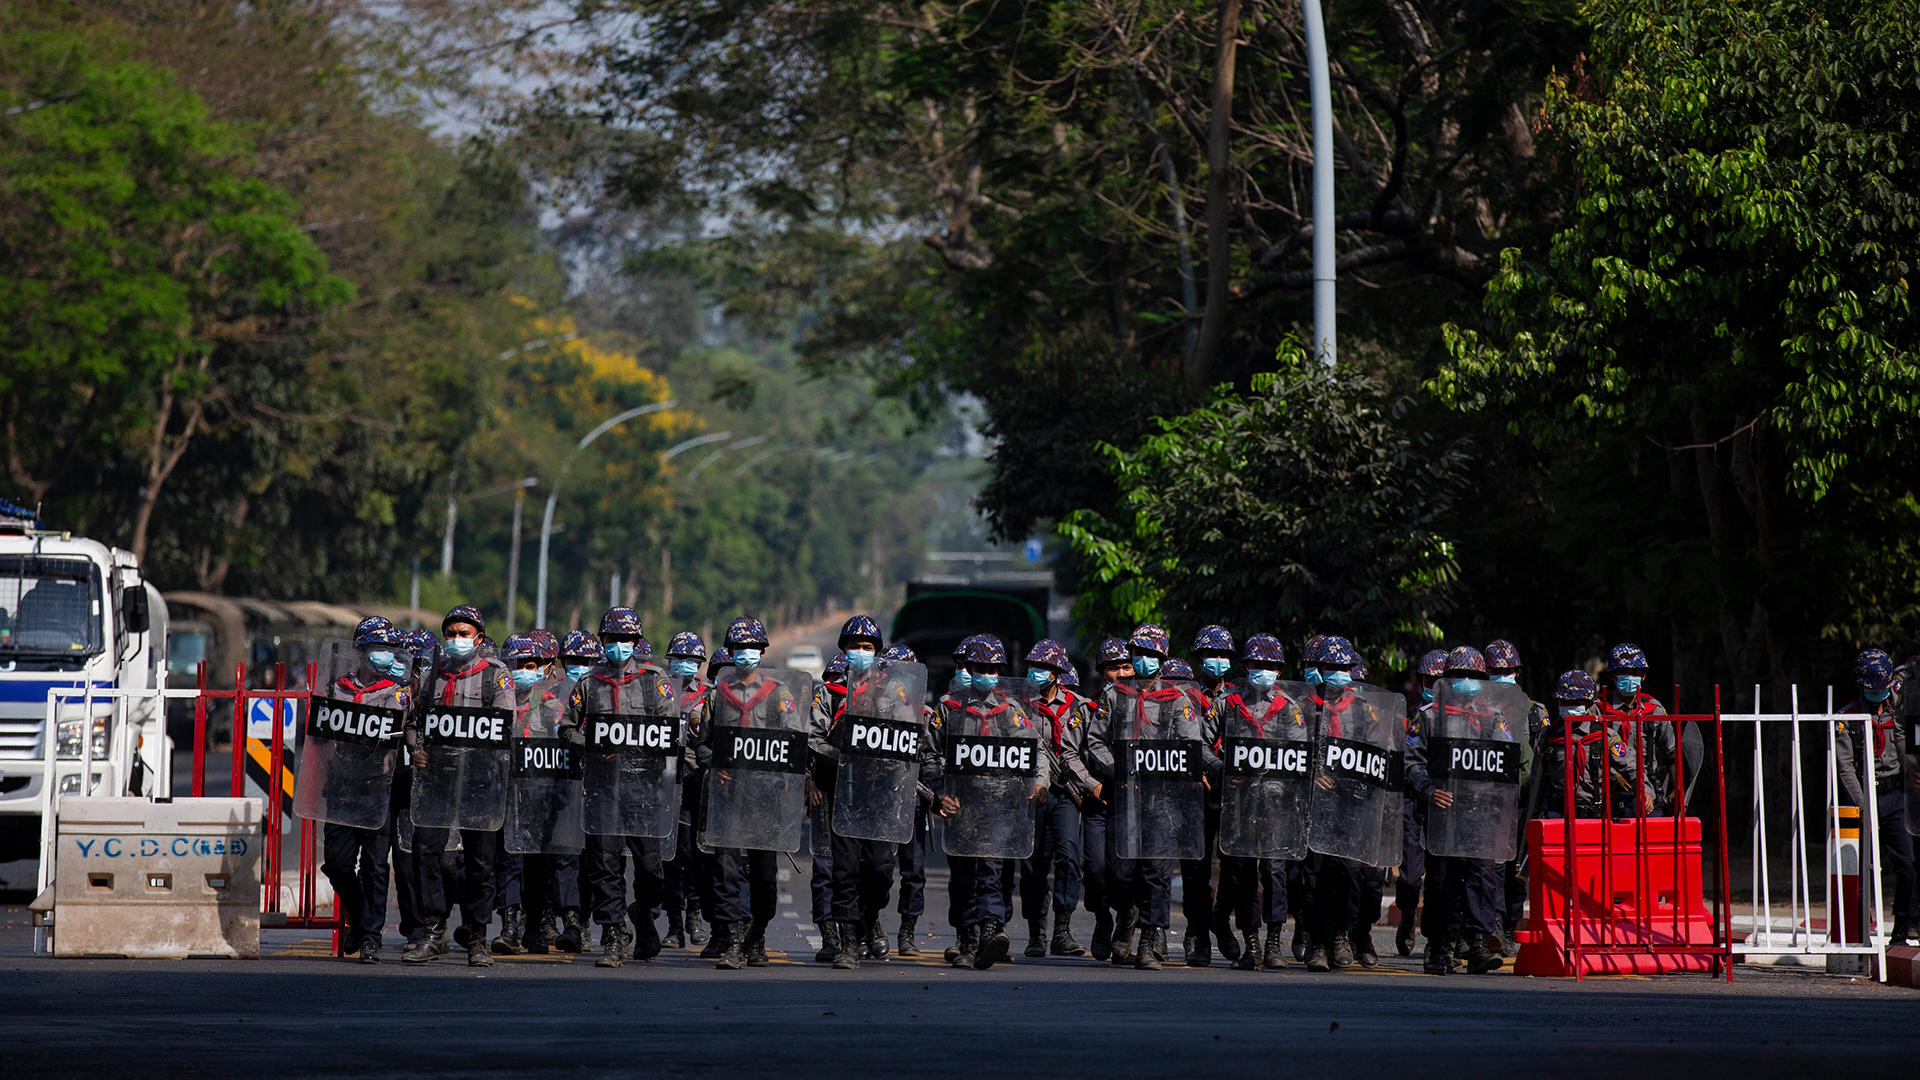 Polizisten gehen in Formation auf einer Straße in Myanmar. | picture alliance/dpa/SOPA Images